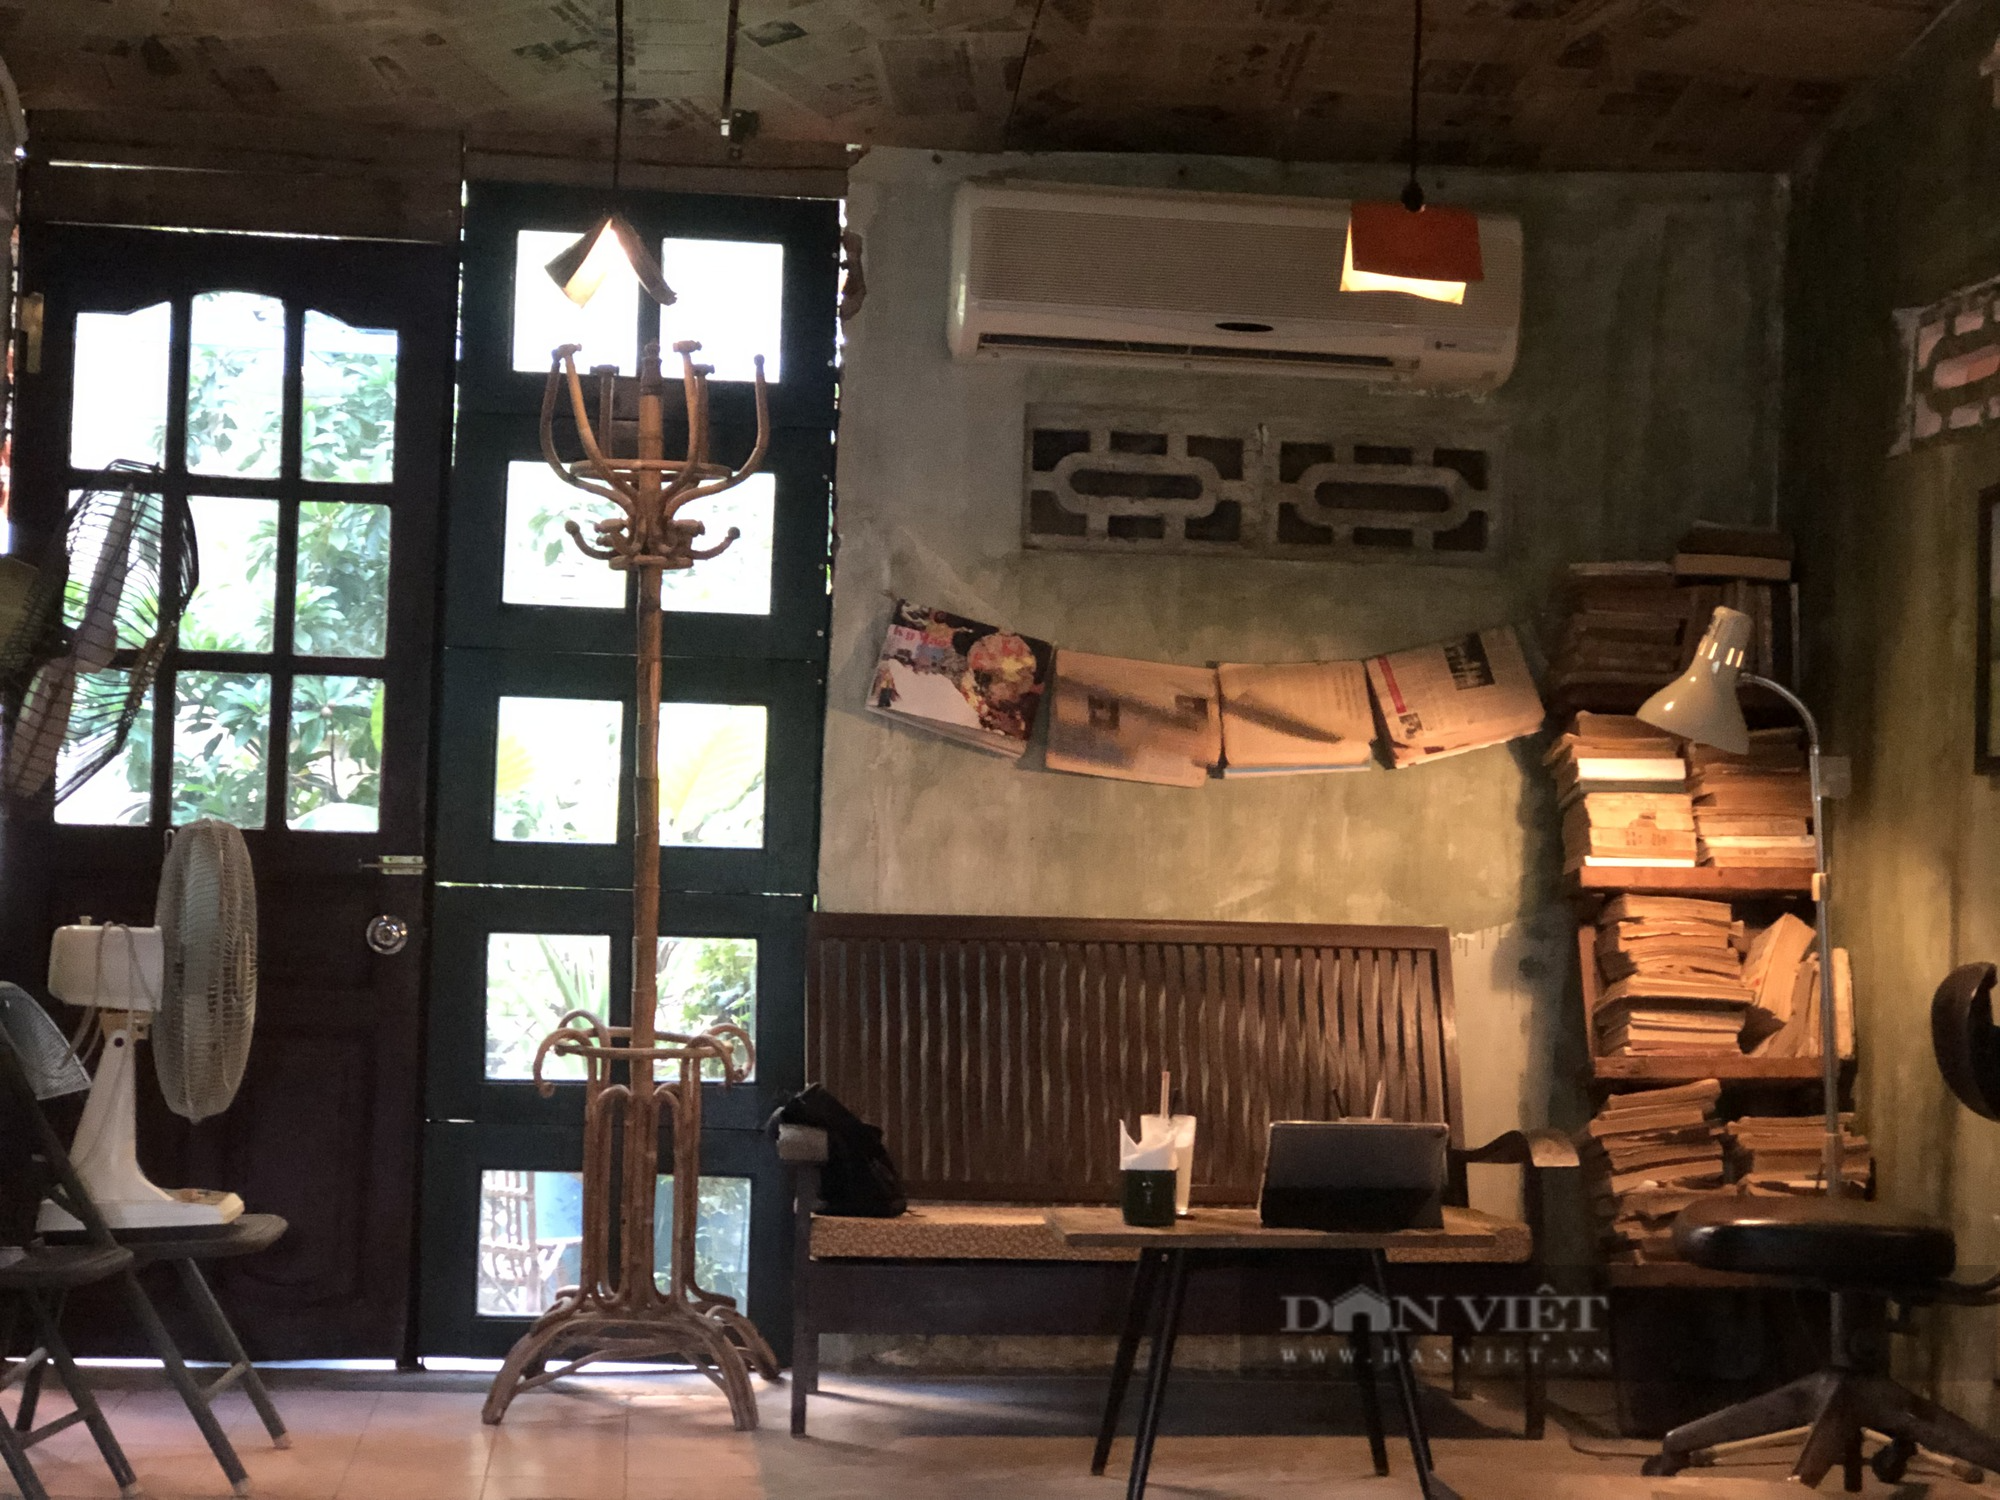 Độc đáo kiến trúc bên trong quán cà phê mang phong cách bao cấp giữa lòng Hà Nội  - Ảnh 3.